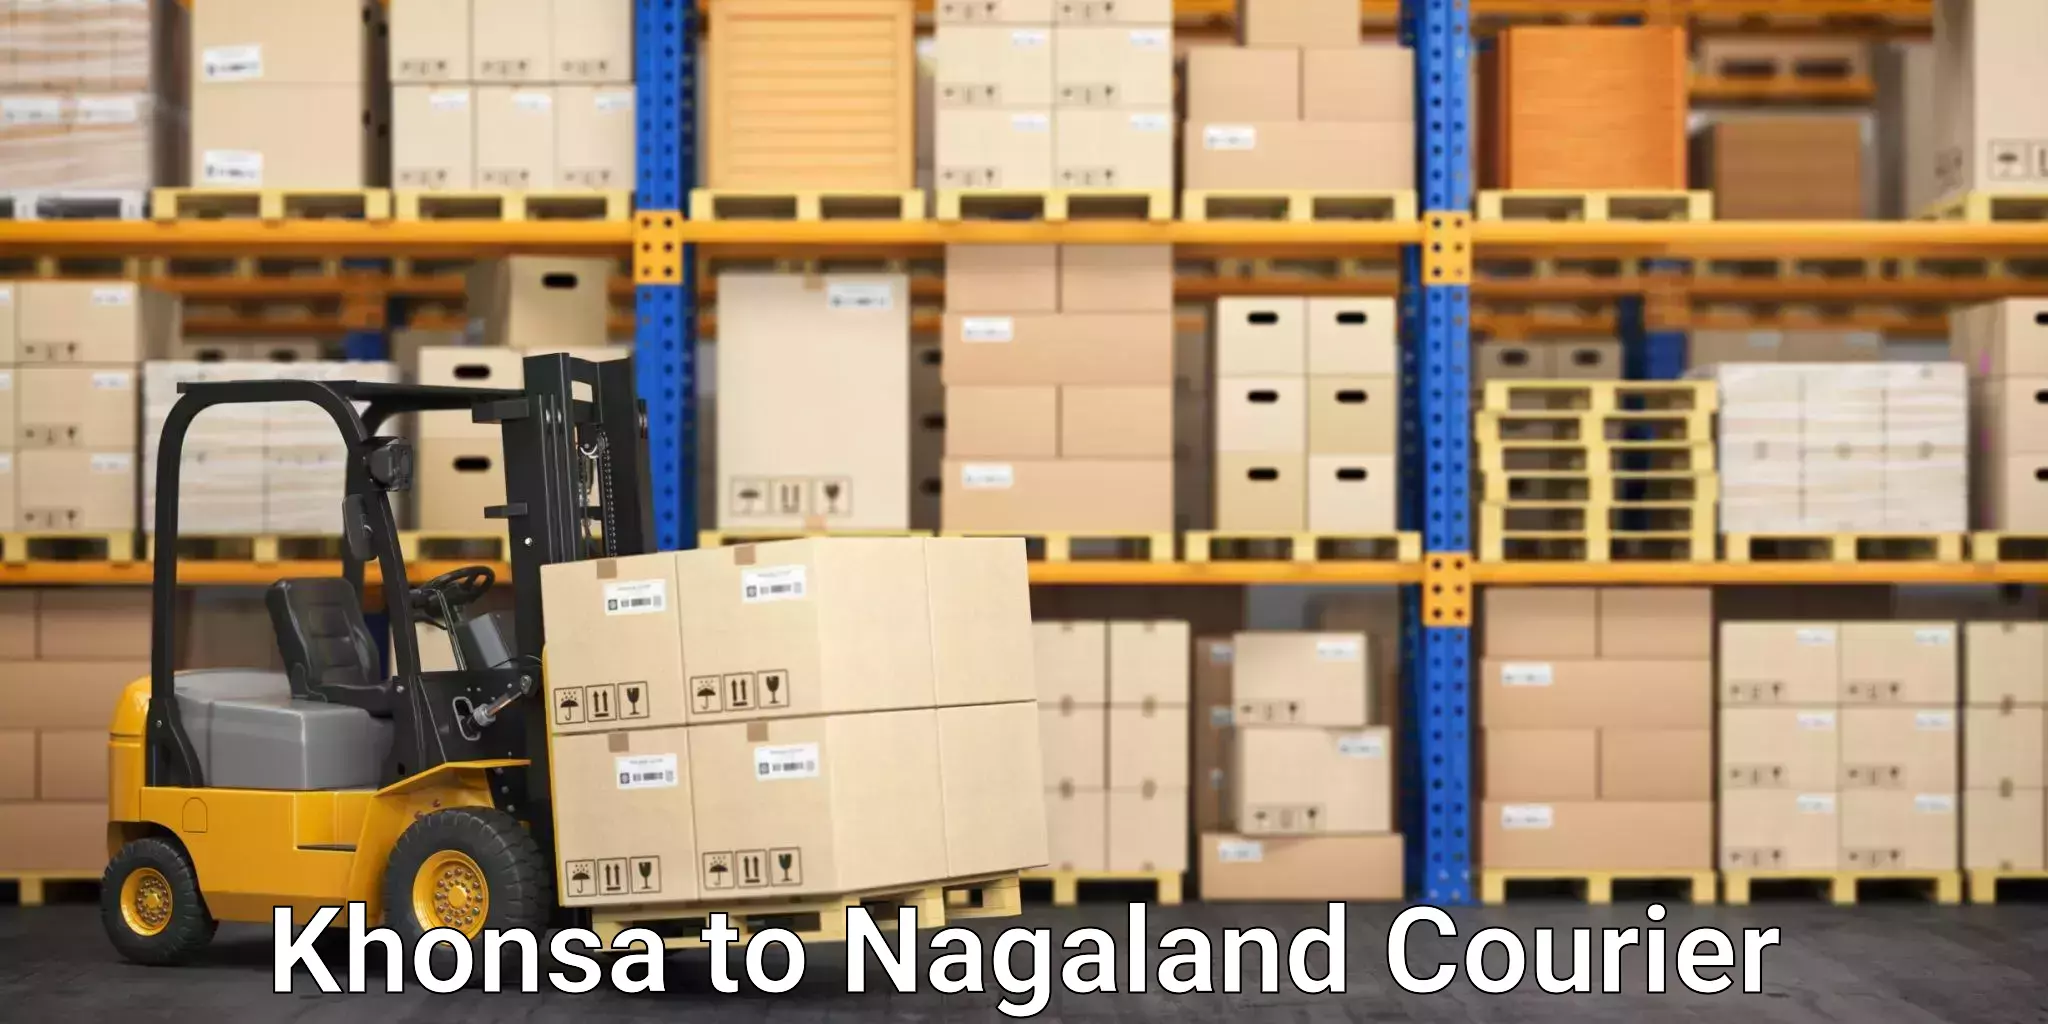 Express courier facilities Khonsa to NIT Nagaland